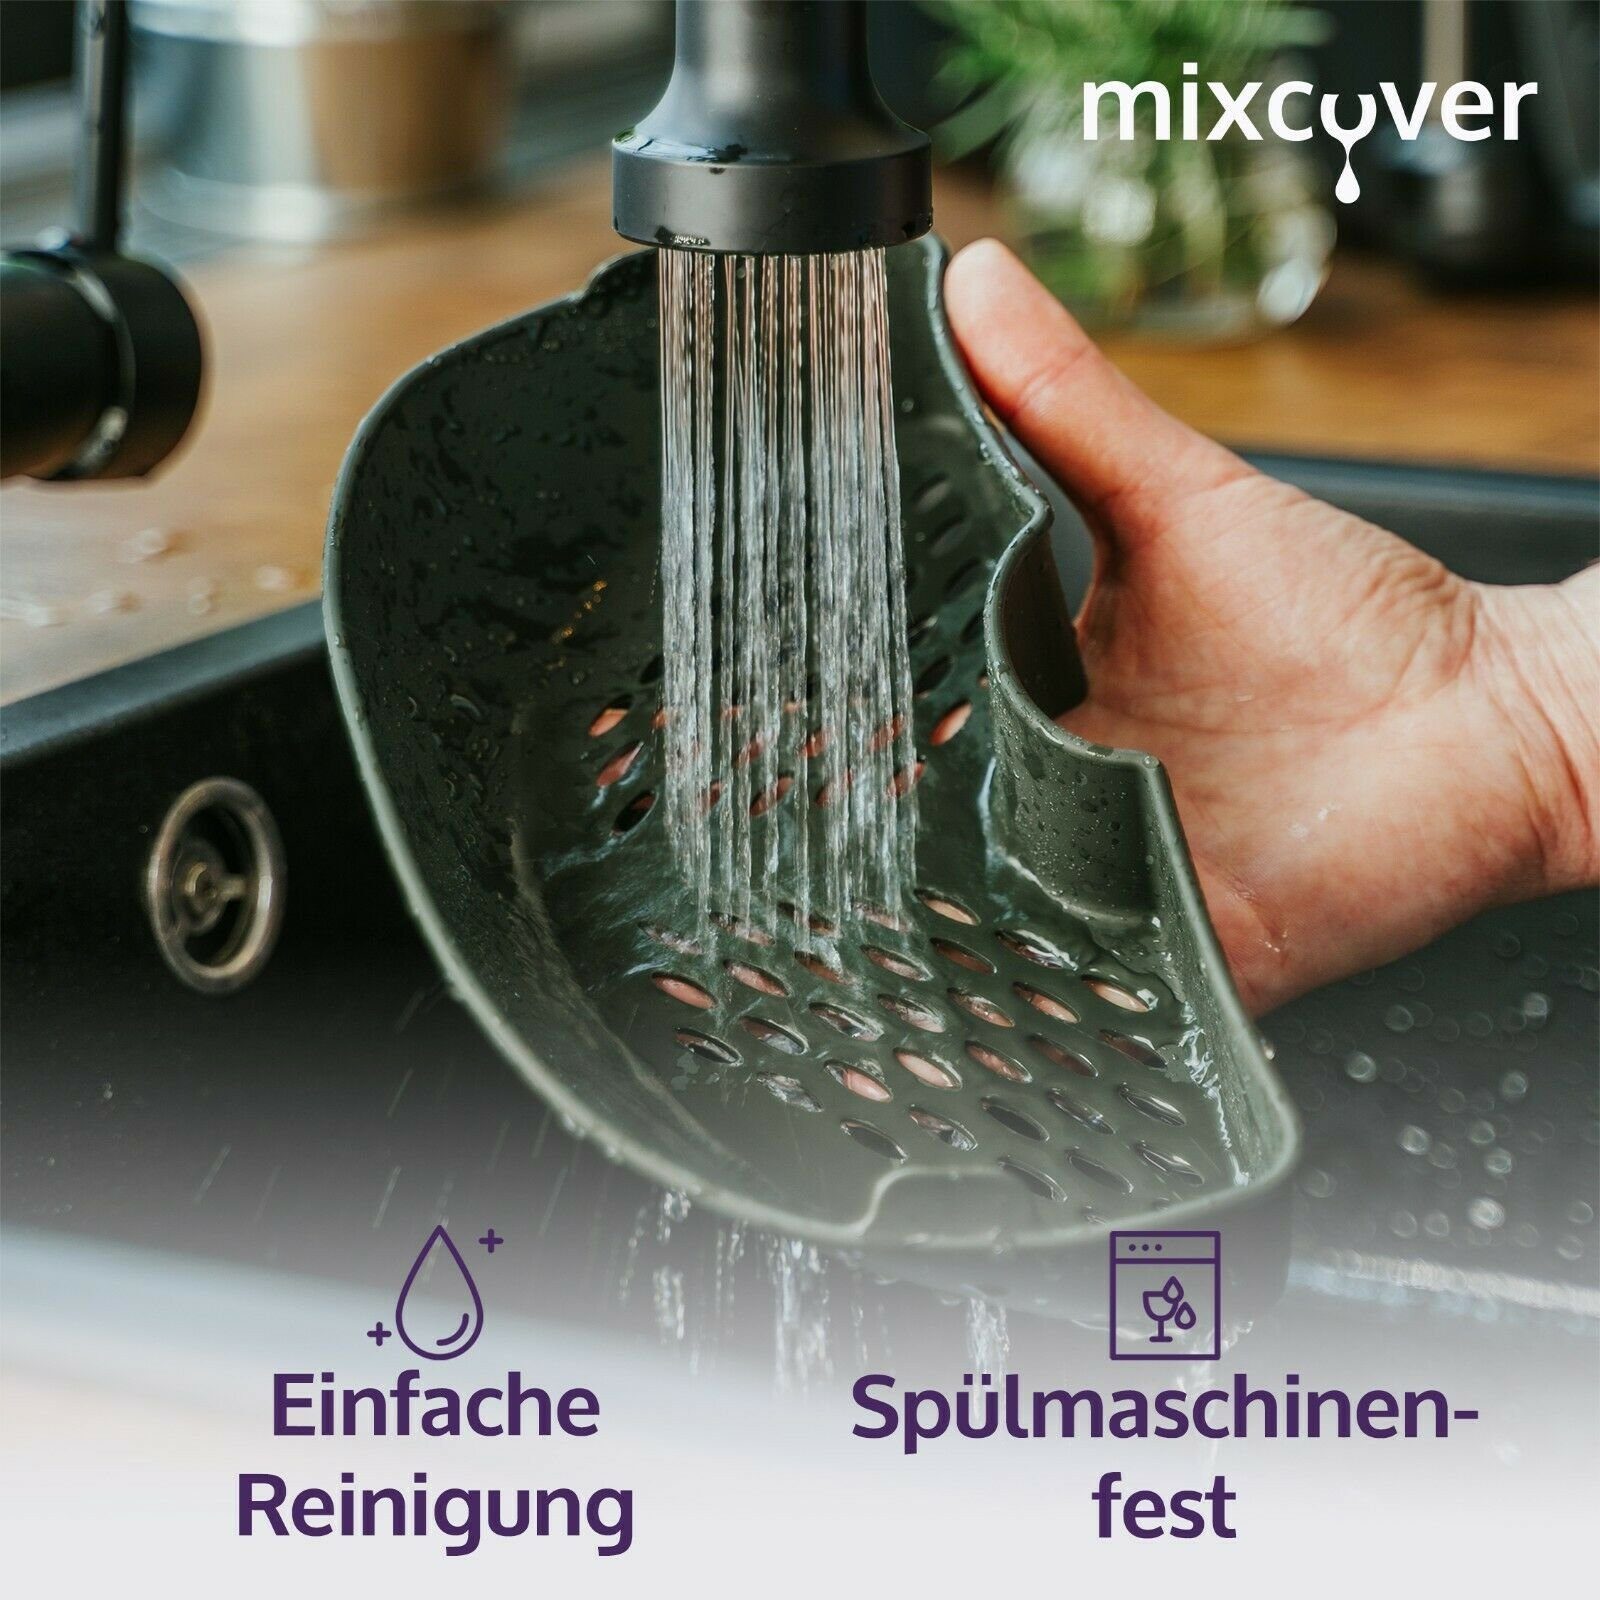 Dampfgarraum für (HALB) & mixcover Smart Mixcover Garraumteiler Cuisine Monsieur Connect Küchenmaschinen-Adapter